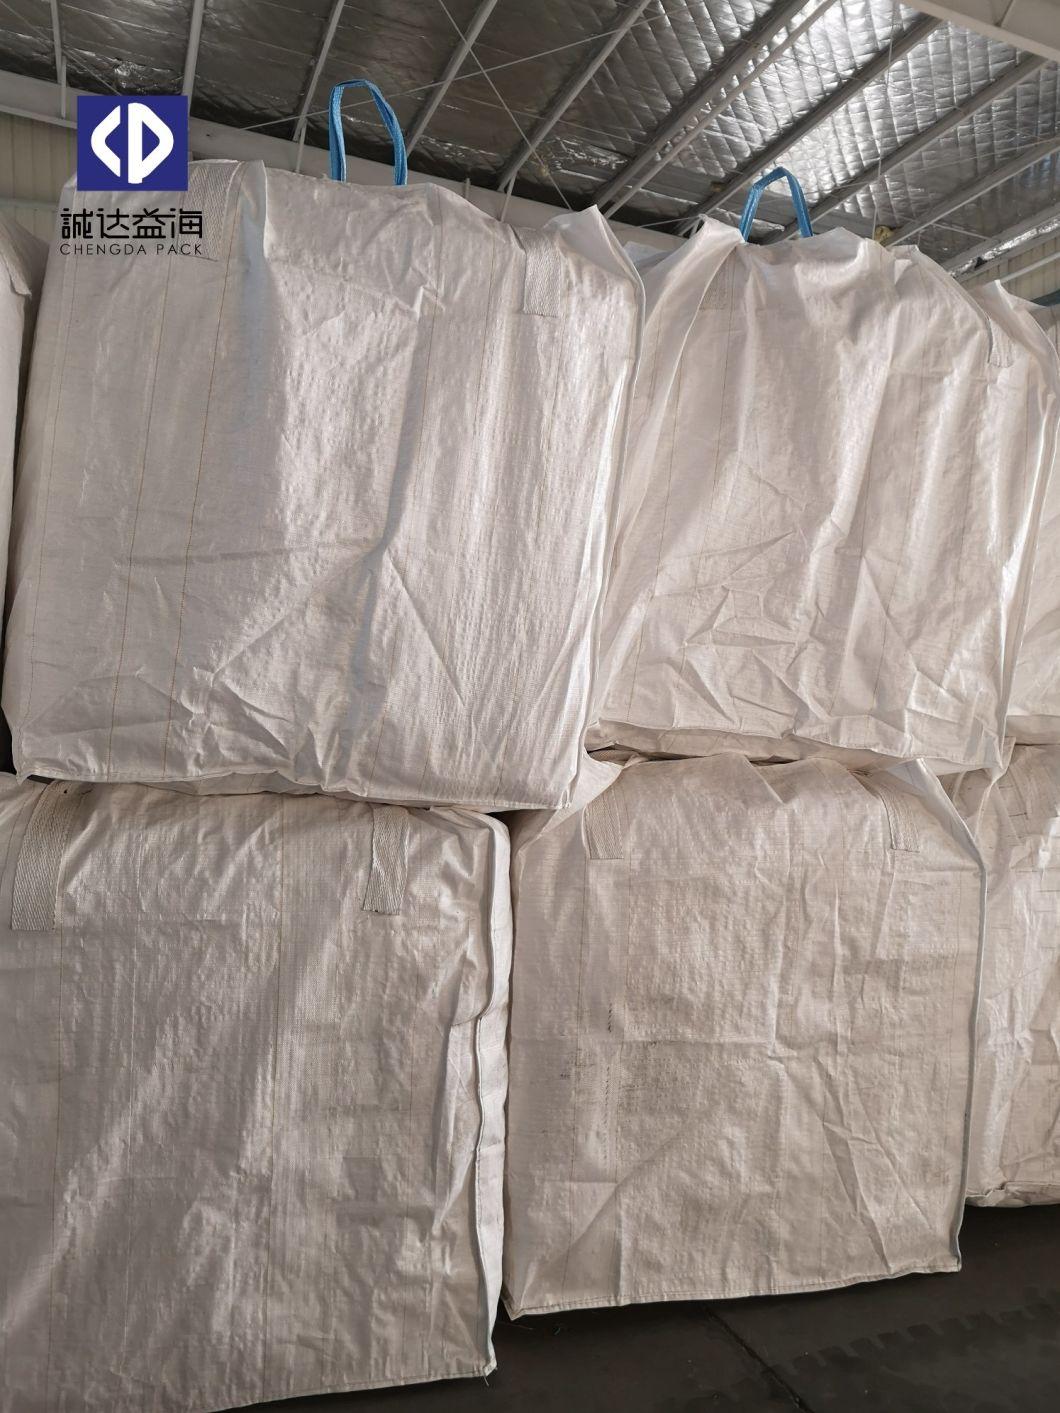 Mining Packing PP Bulk Bags 1000kg Circular Type Virgin Polypropylene Material